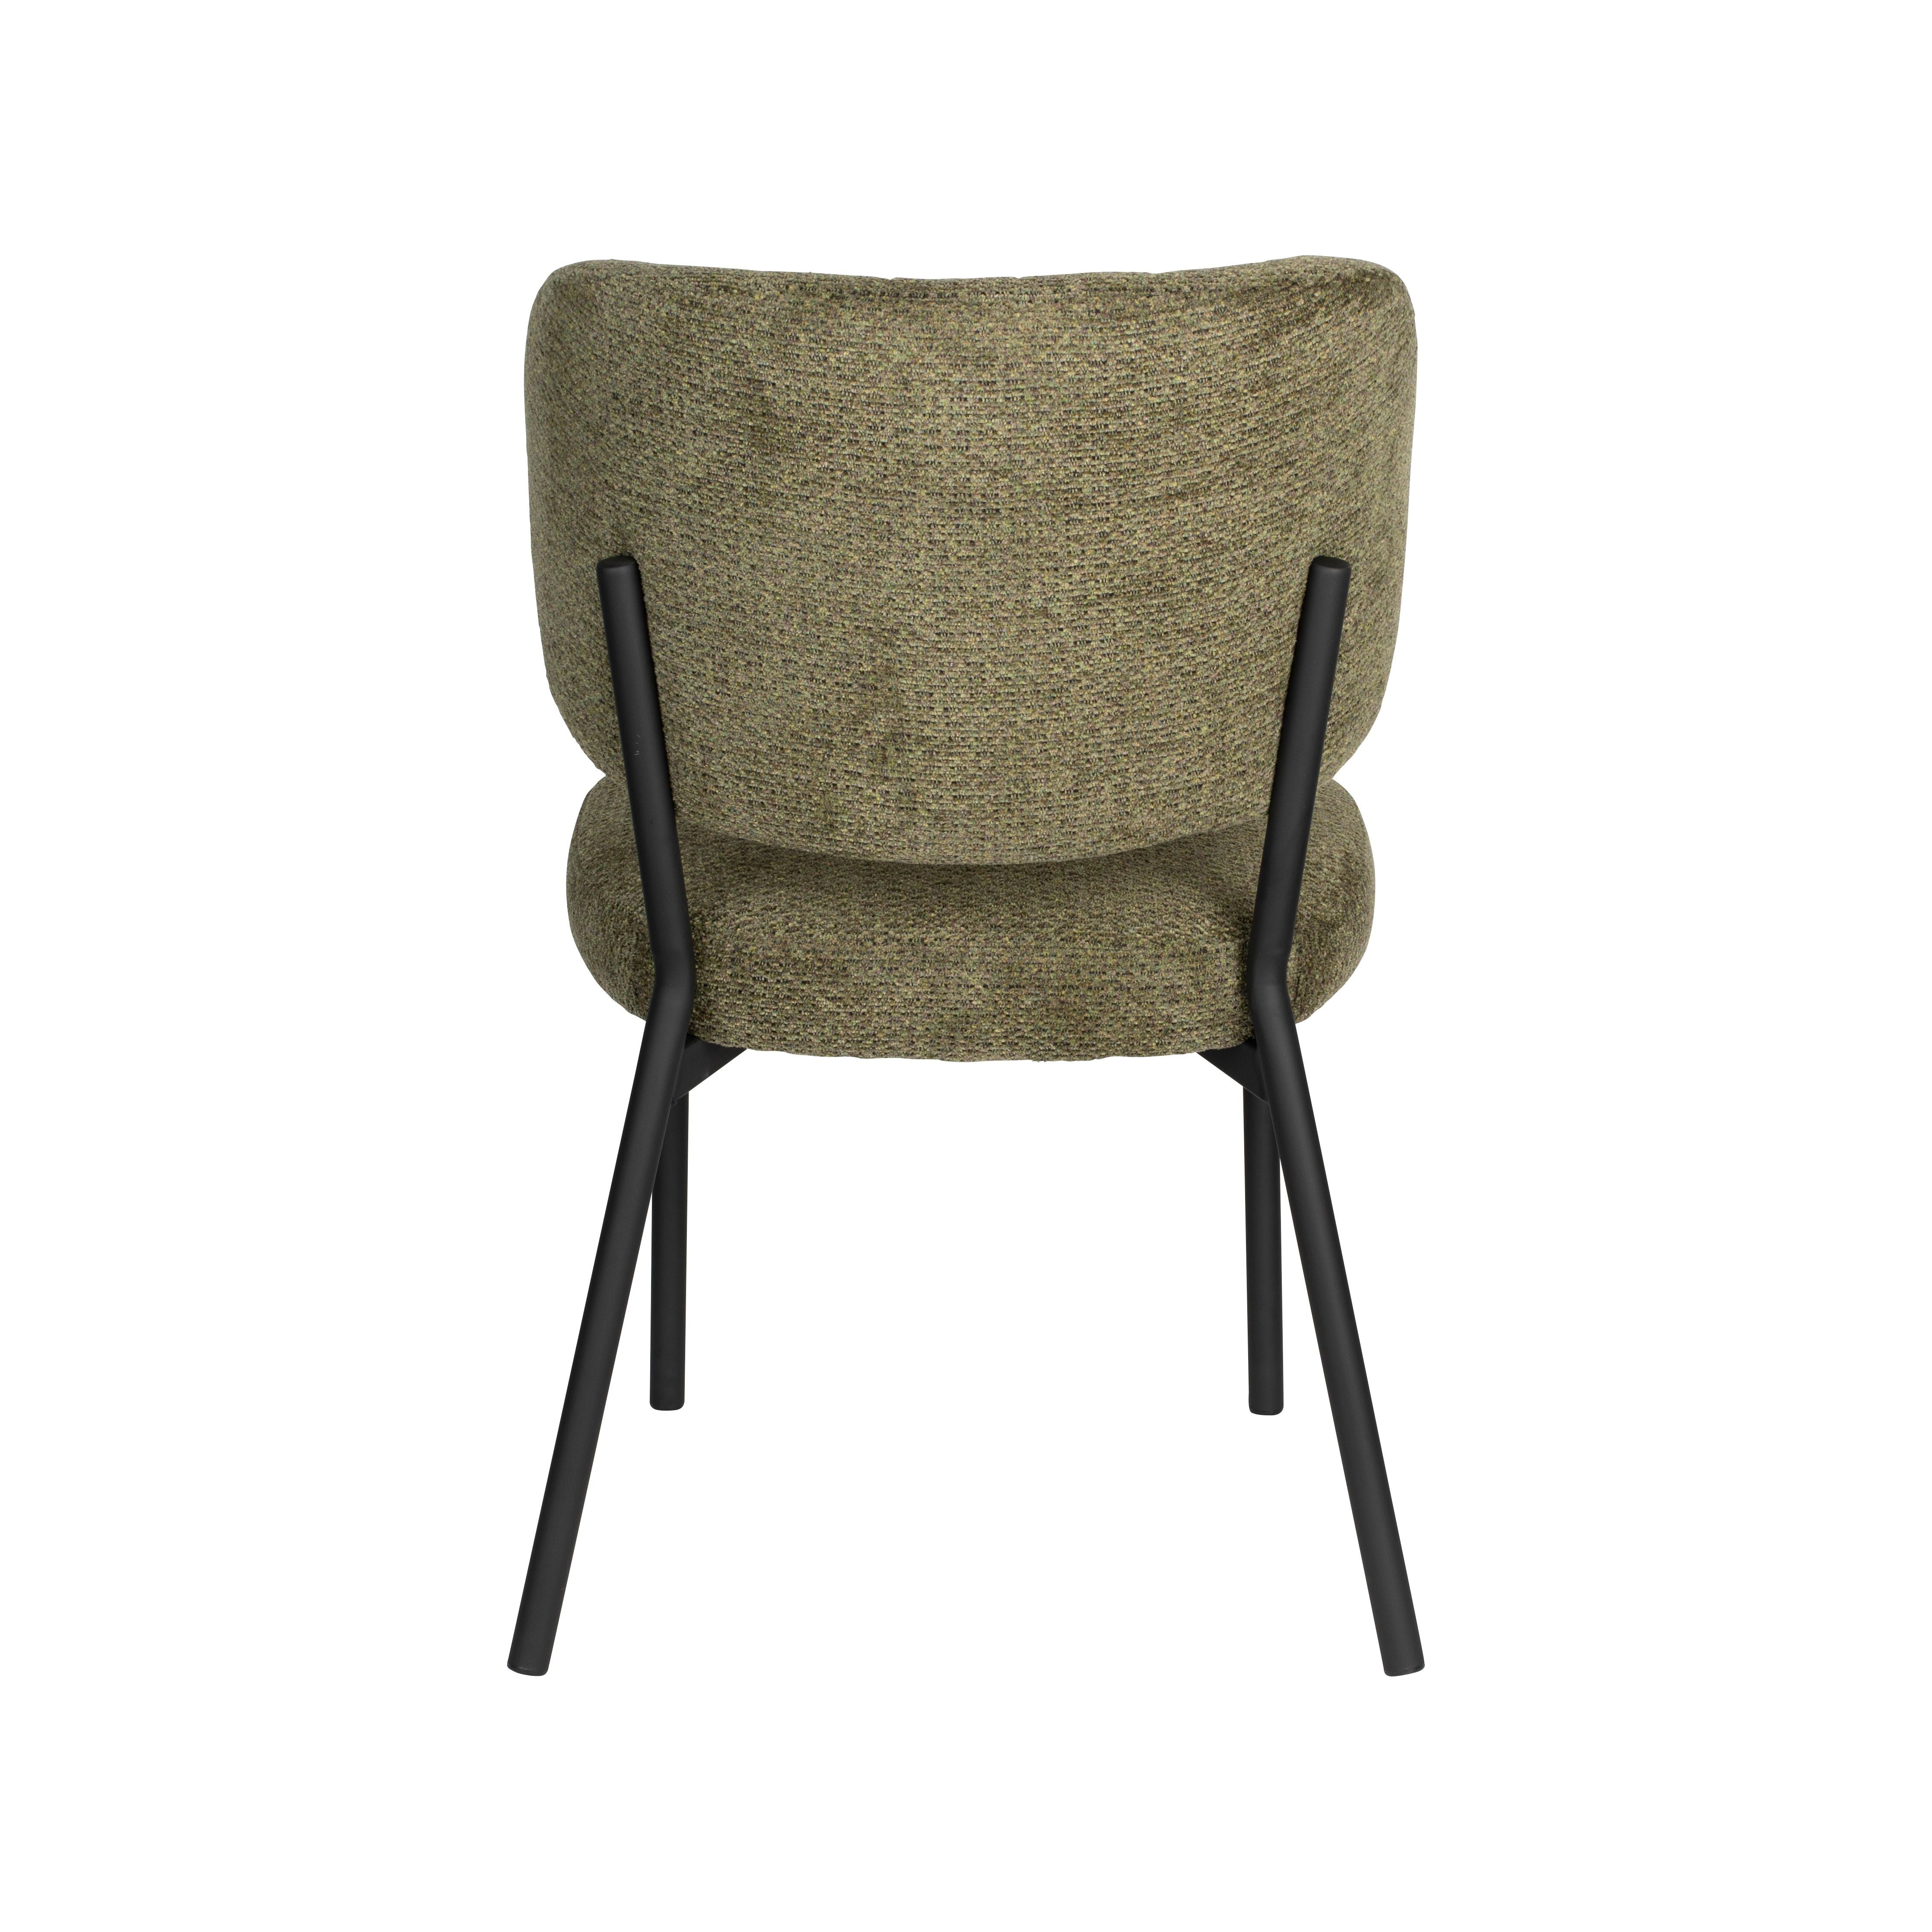 Chair sanne green grey